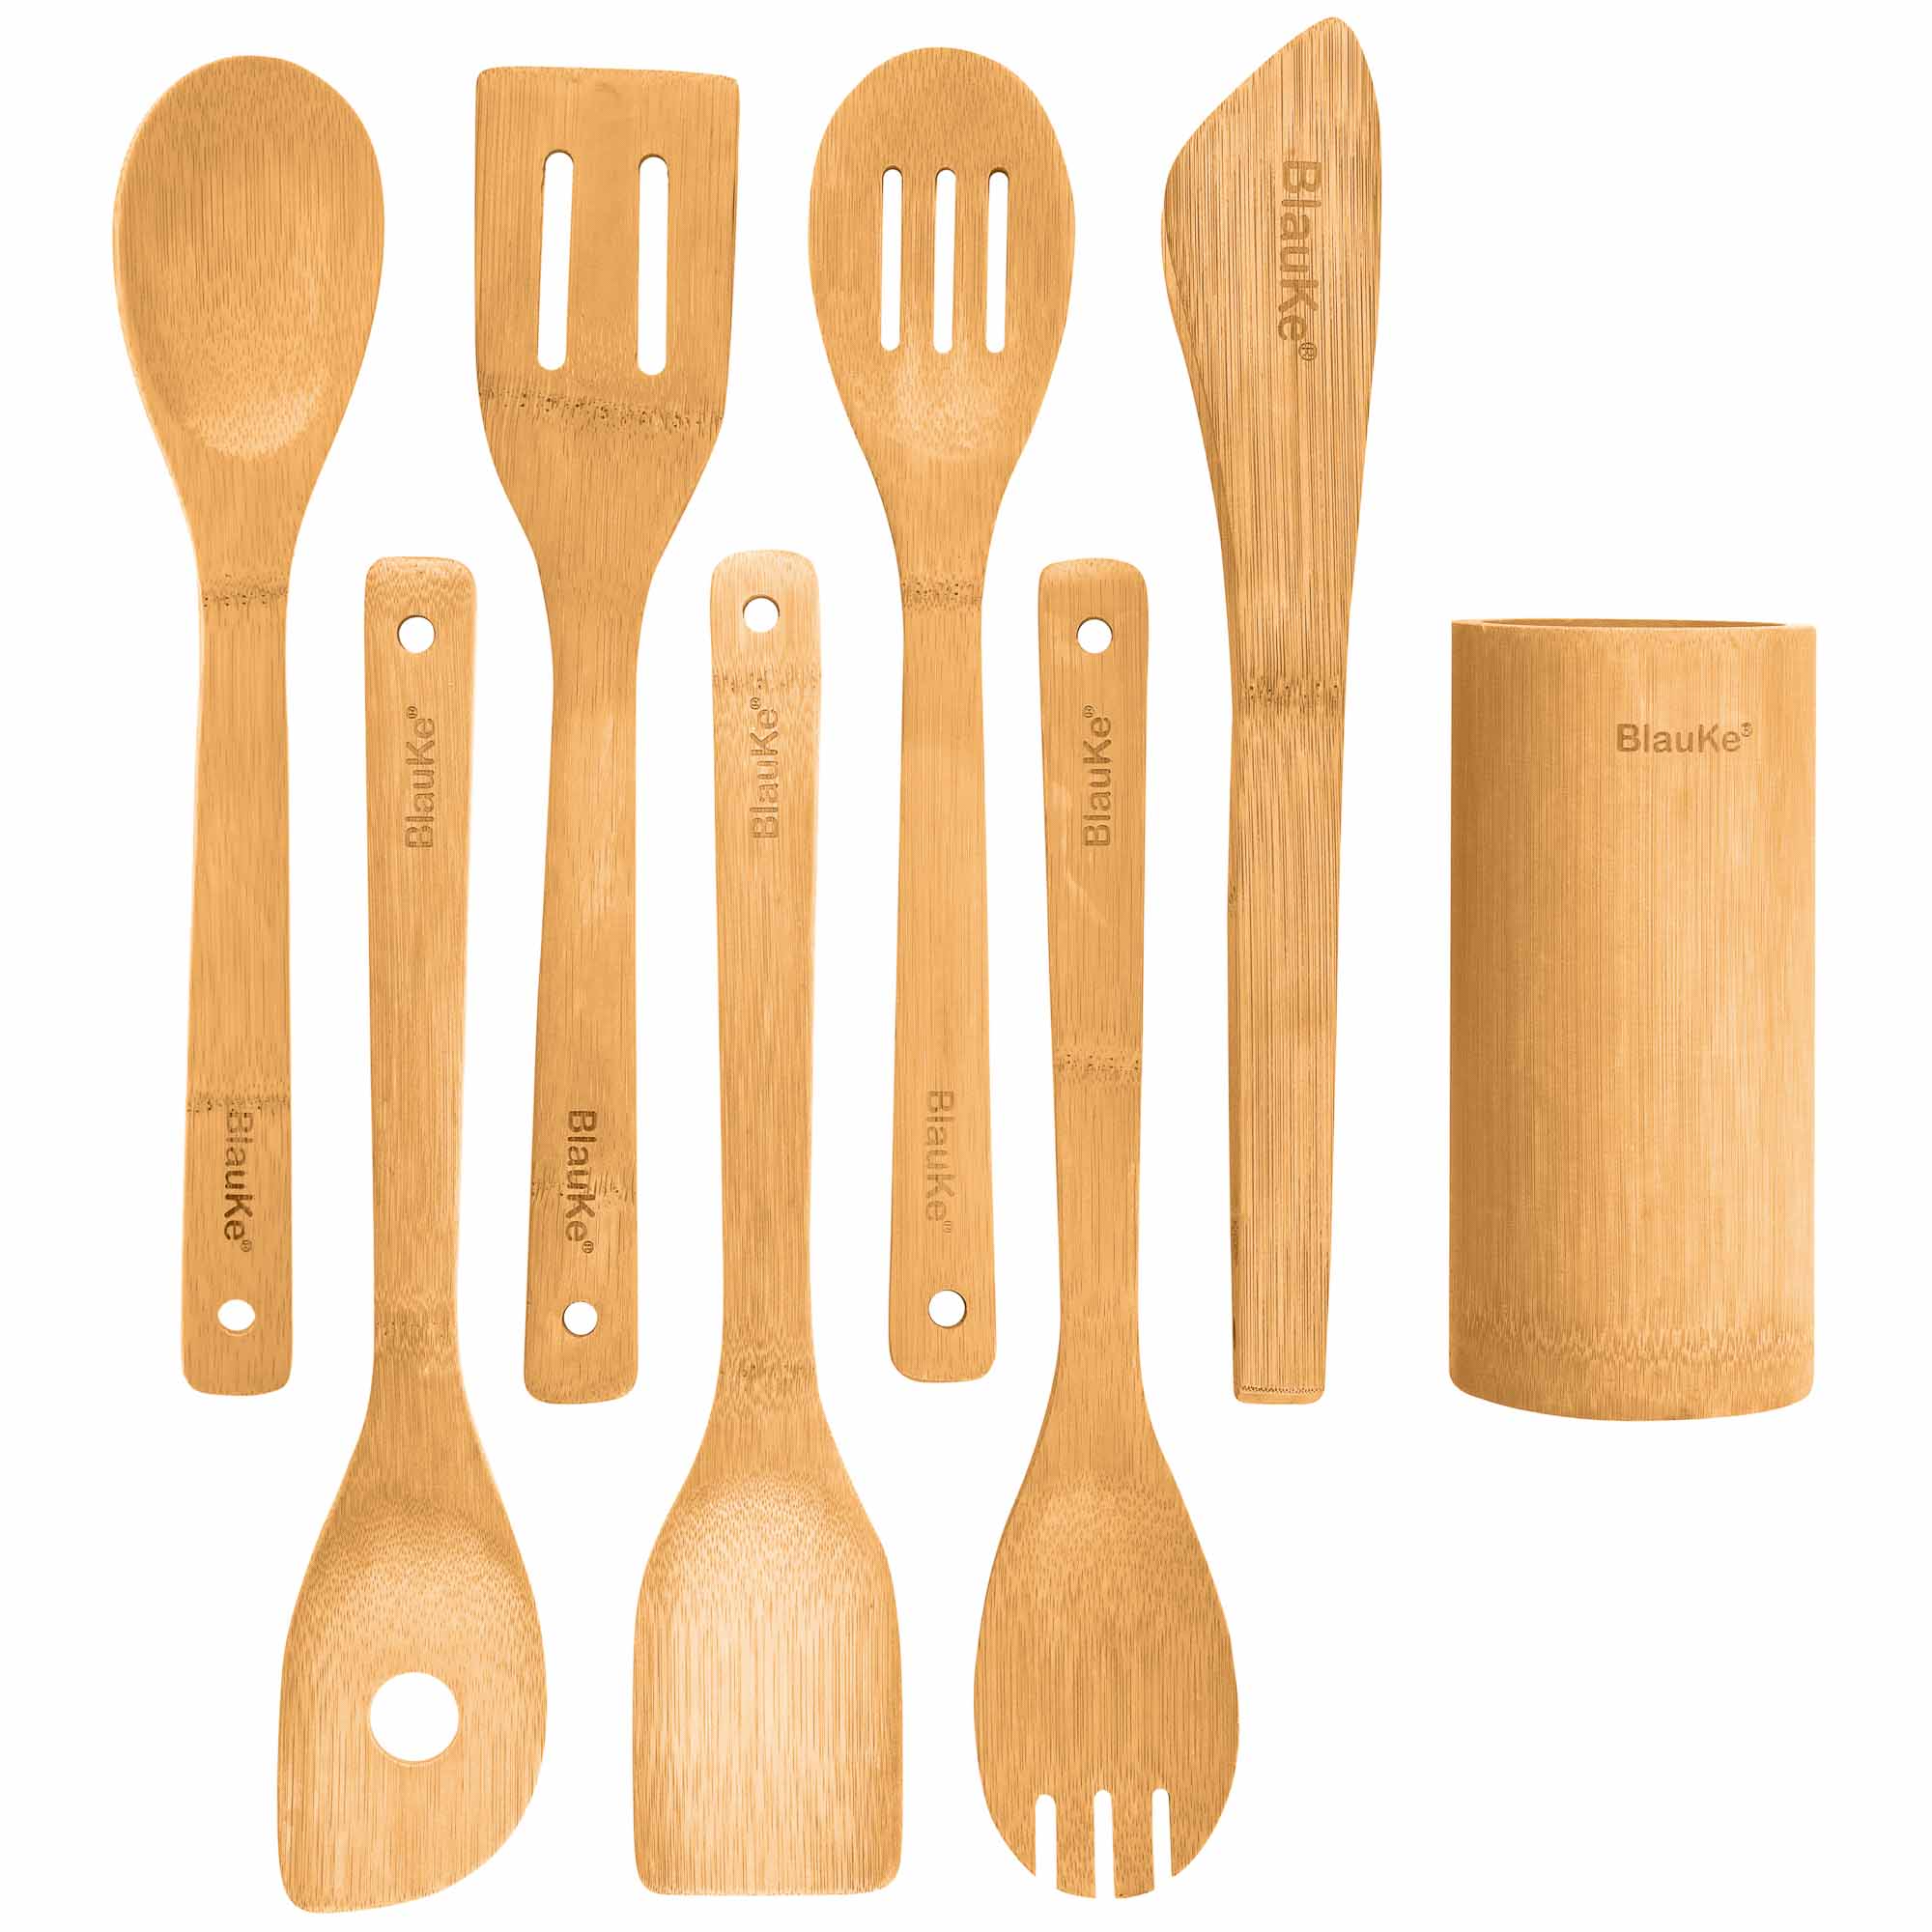 Bamboo Kitchen Utensils Set 8-Pack - Wooden Cooking Utensils for Nonstick Cookware - Wooden Cooking Spoons, Spatulas, Turner, Tongs, Utensil Holder